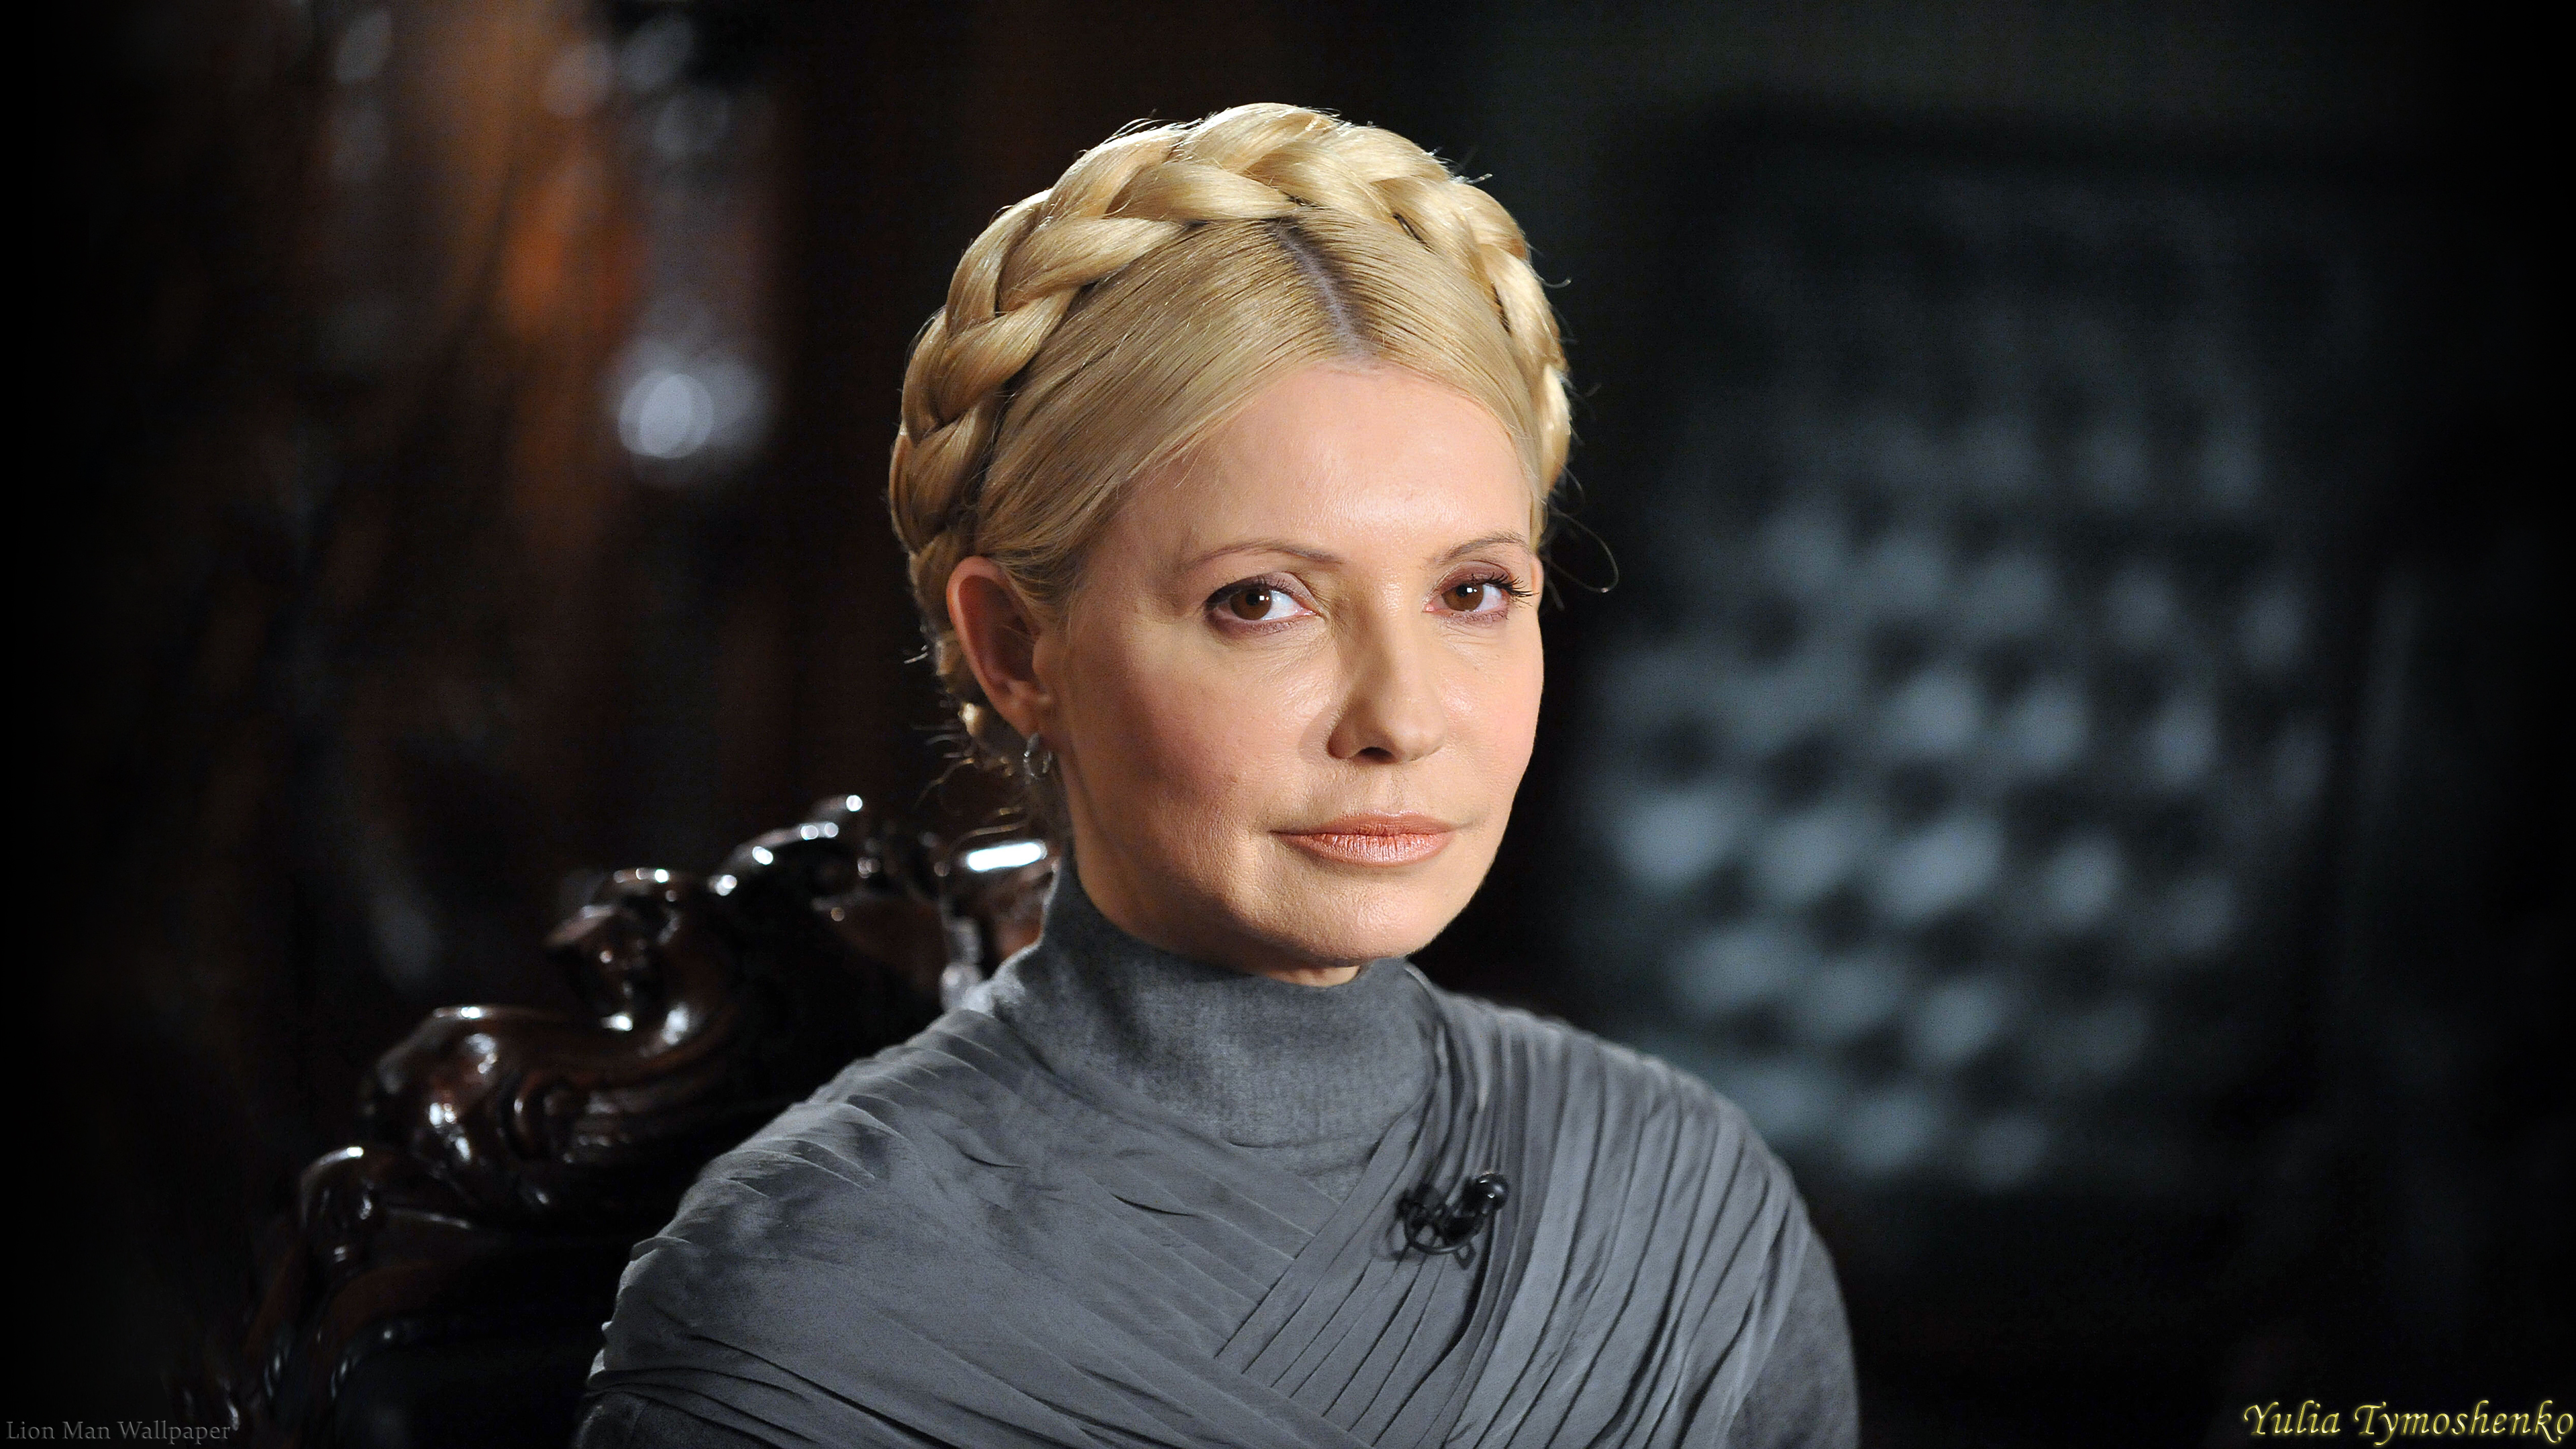 Yulia Tymoshenko's Signature Braided Hair - wide 3